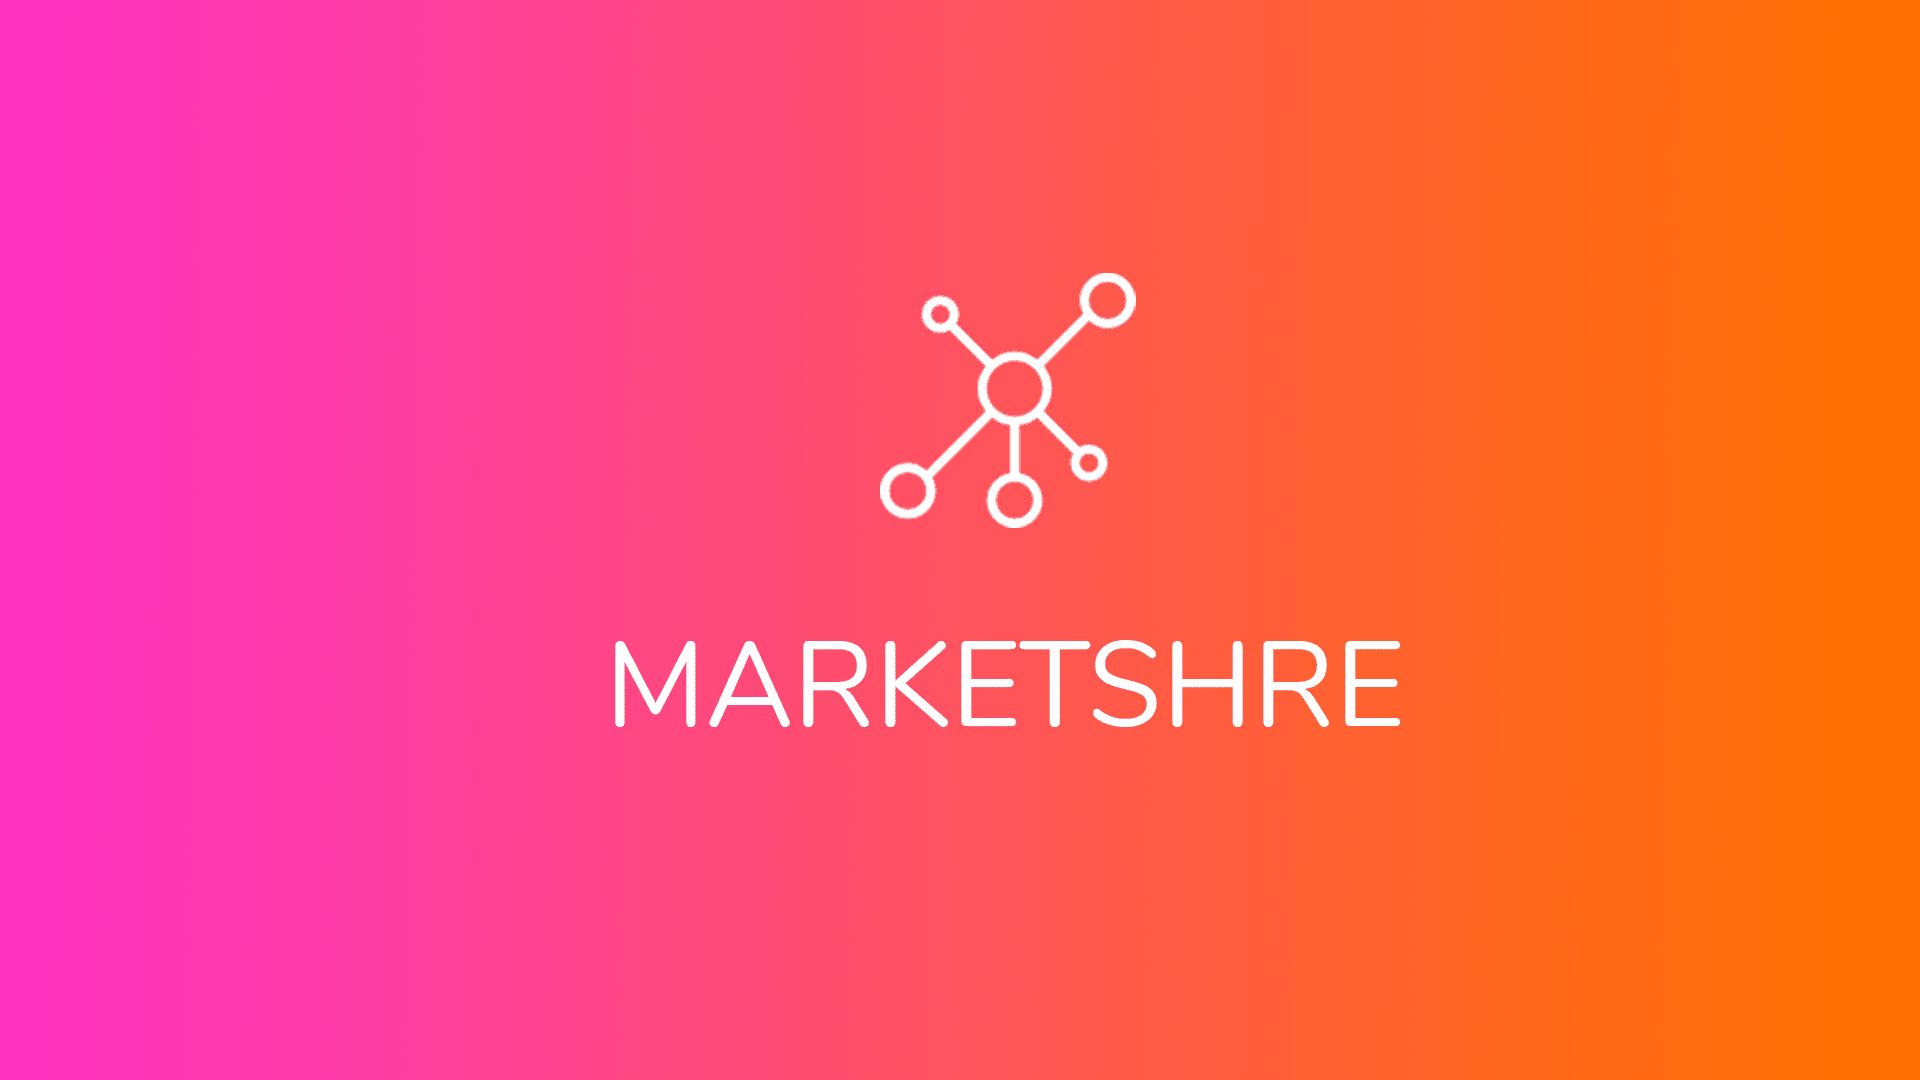 Marketshre